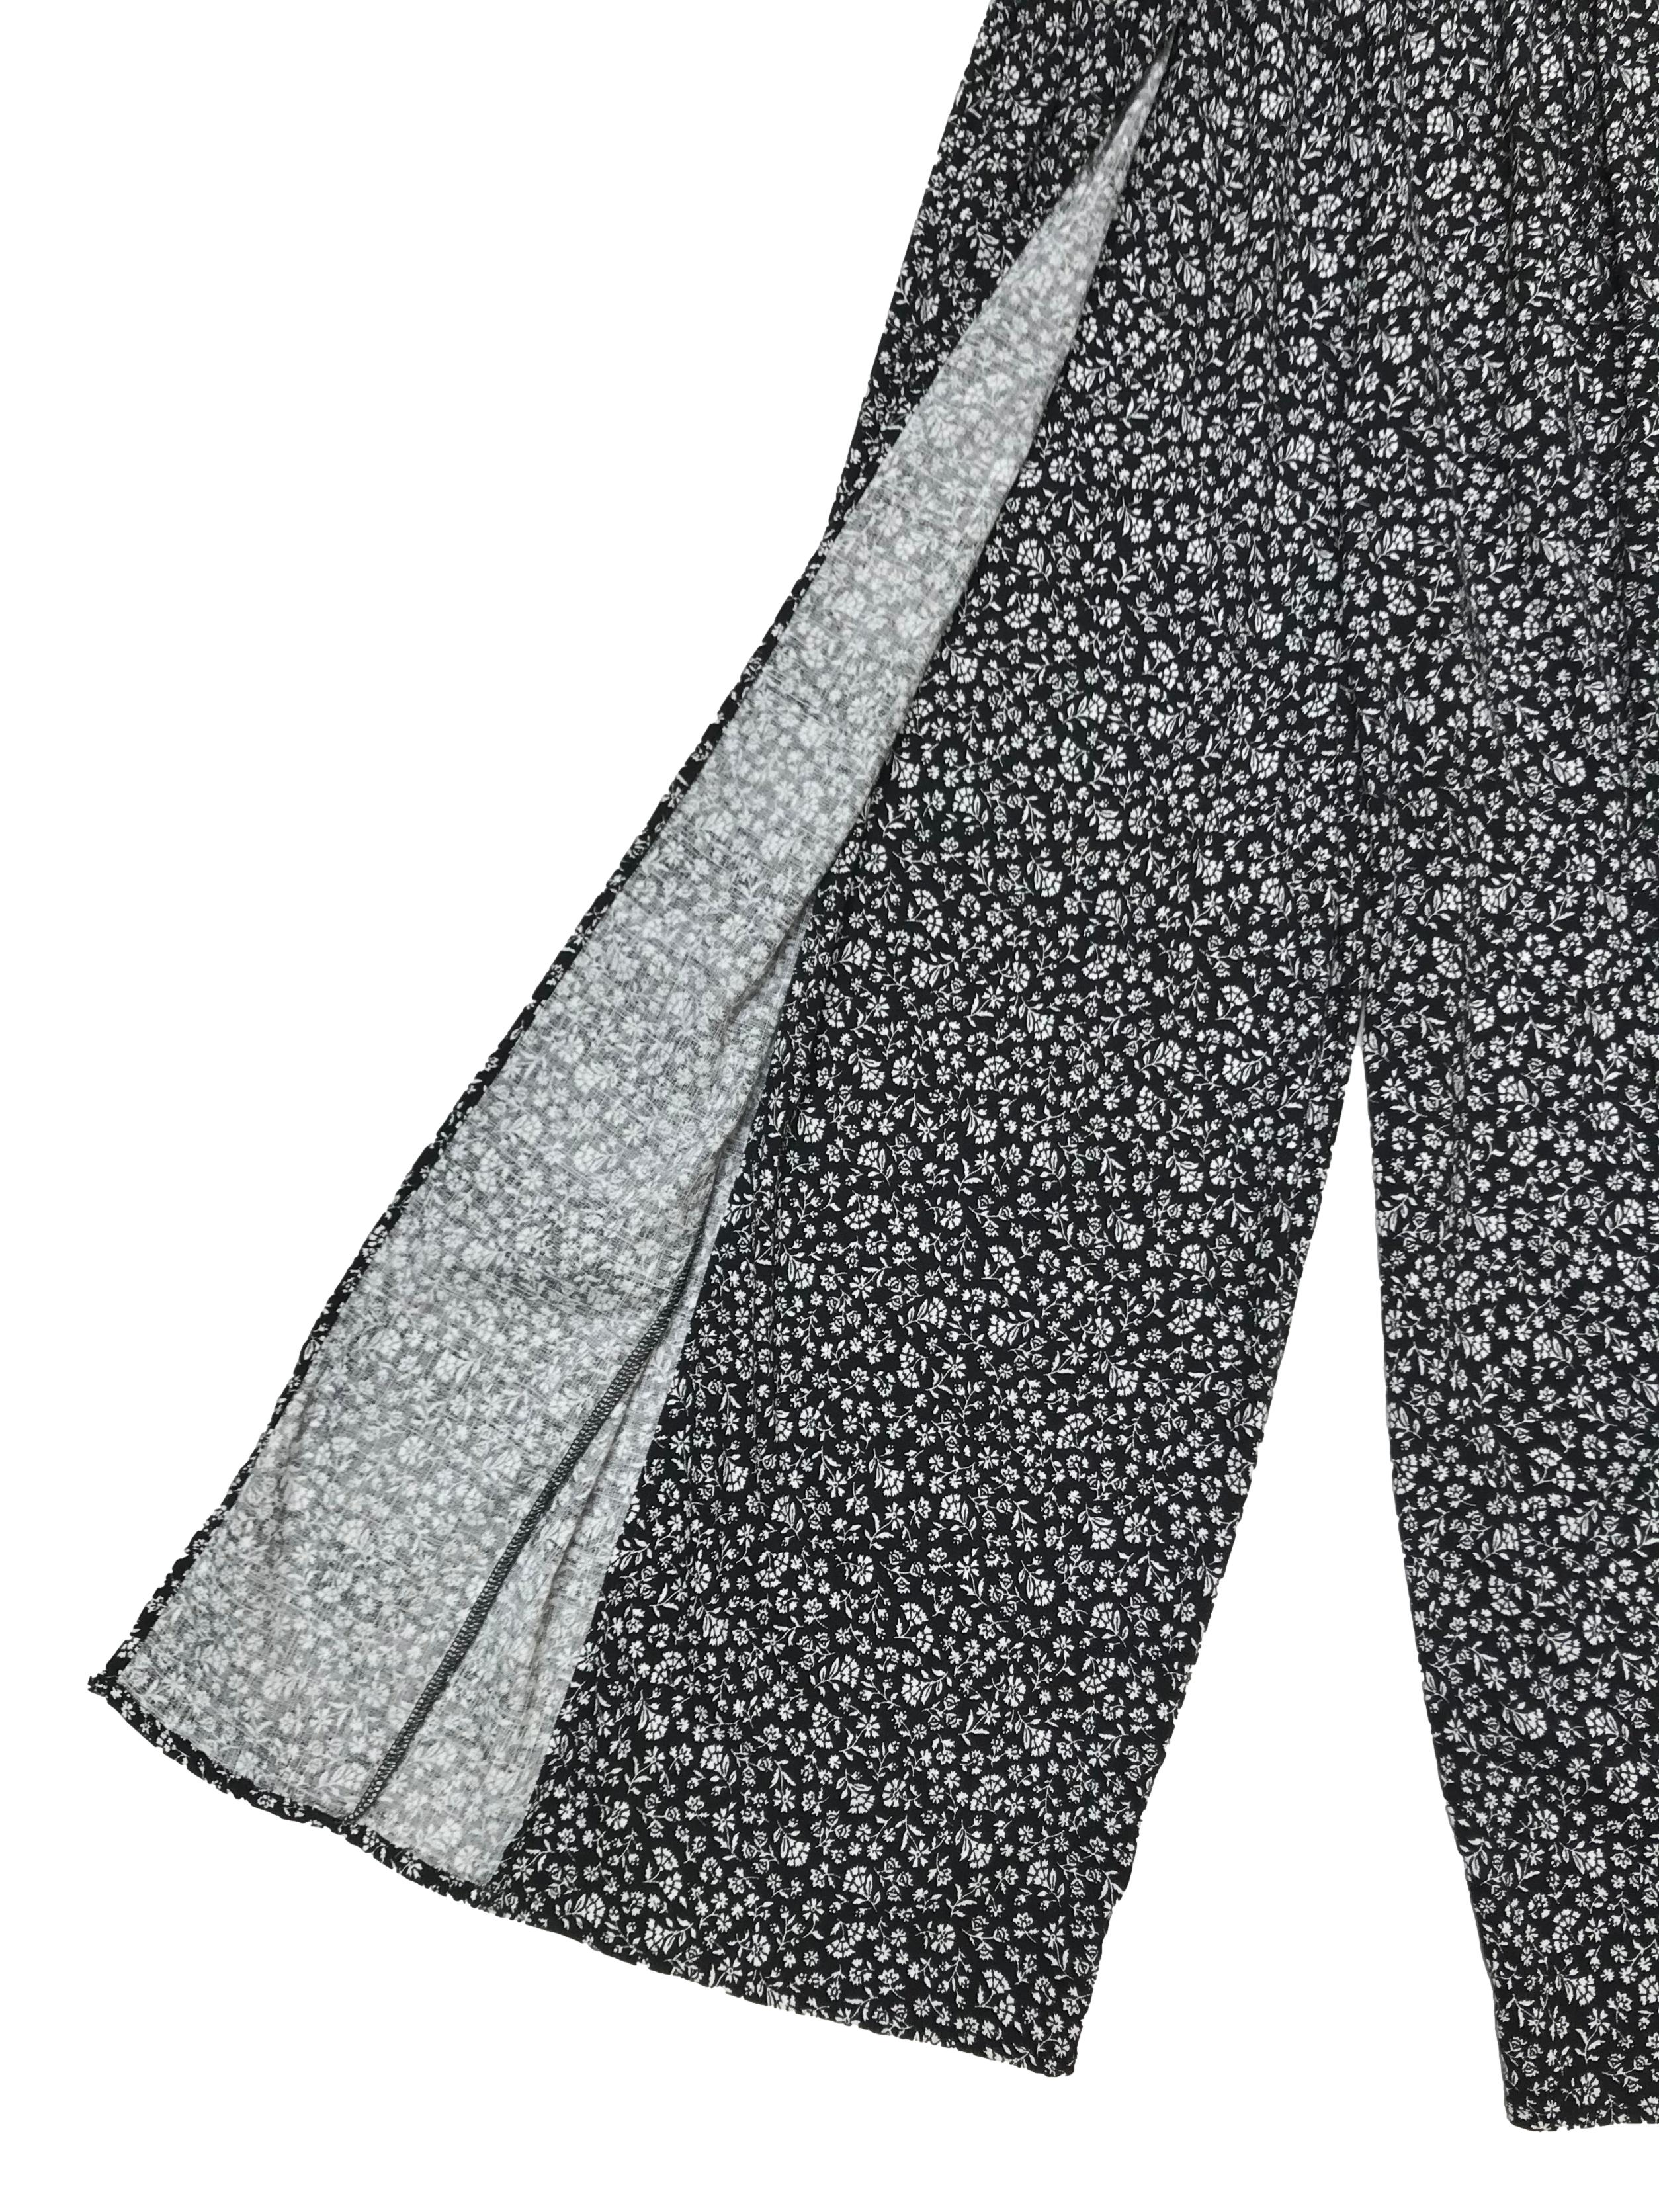 Pantalón Nebula culotte al tobillo, modelo con aberturas a lo largo, tela fresca negra con florcitas blancas, a la cintura con pretina elástica. Largo  92cm. Nuevo con etiqueta, precio original S/ 109.9